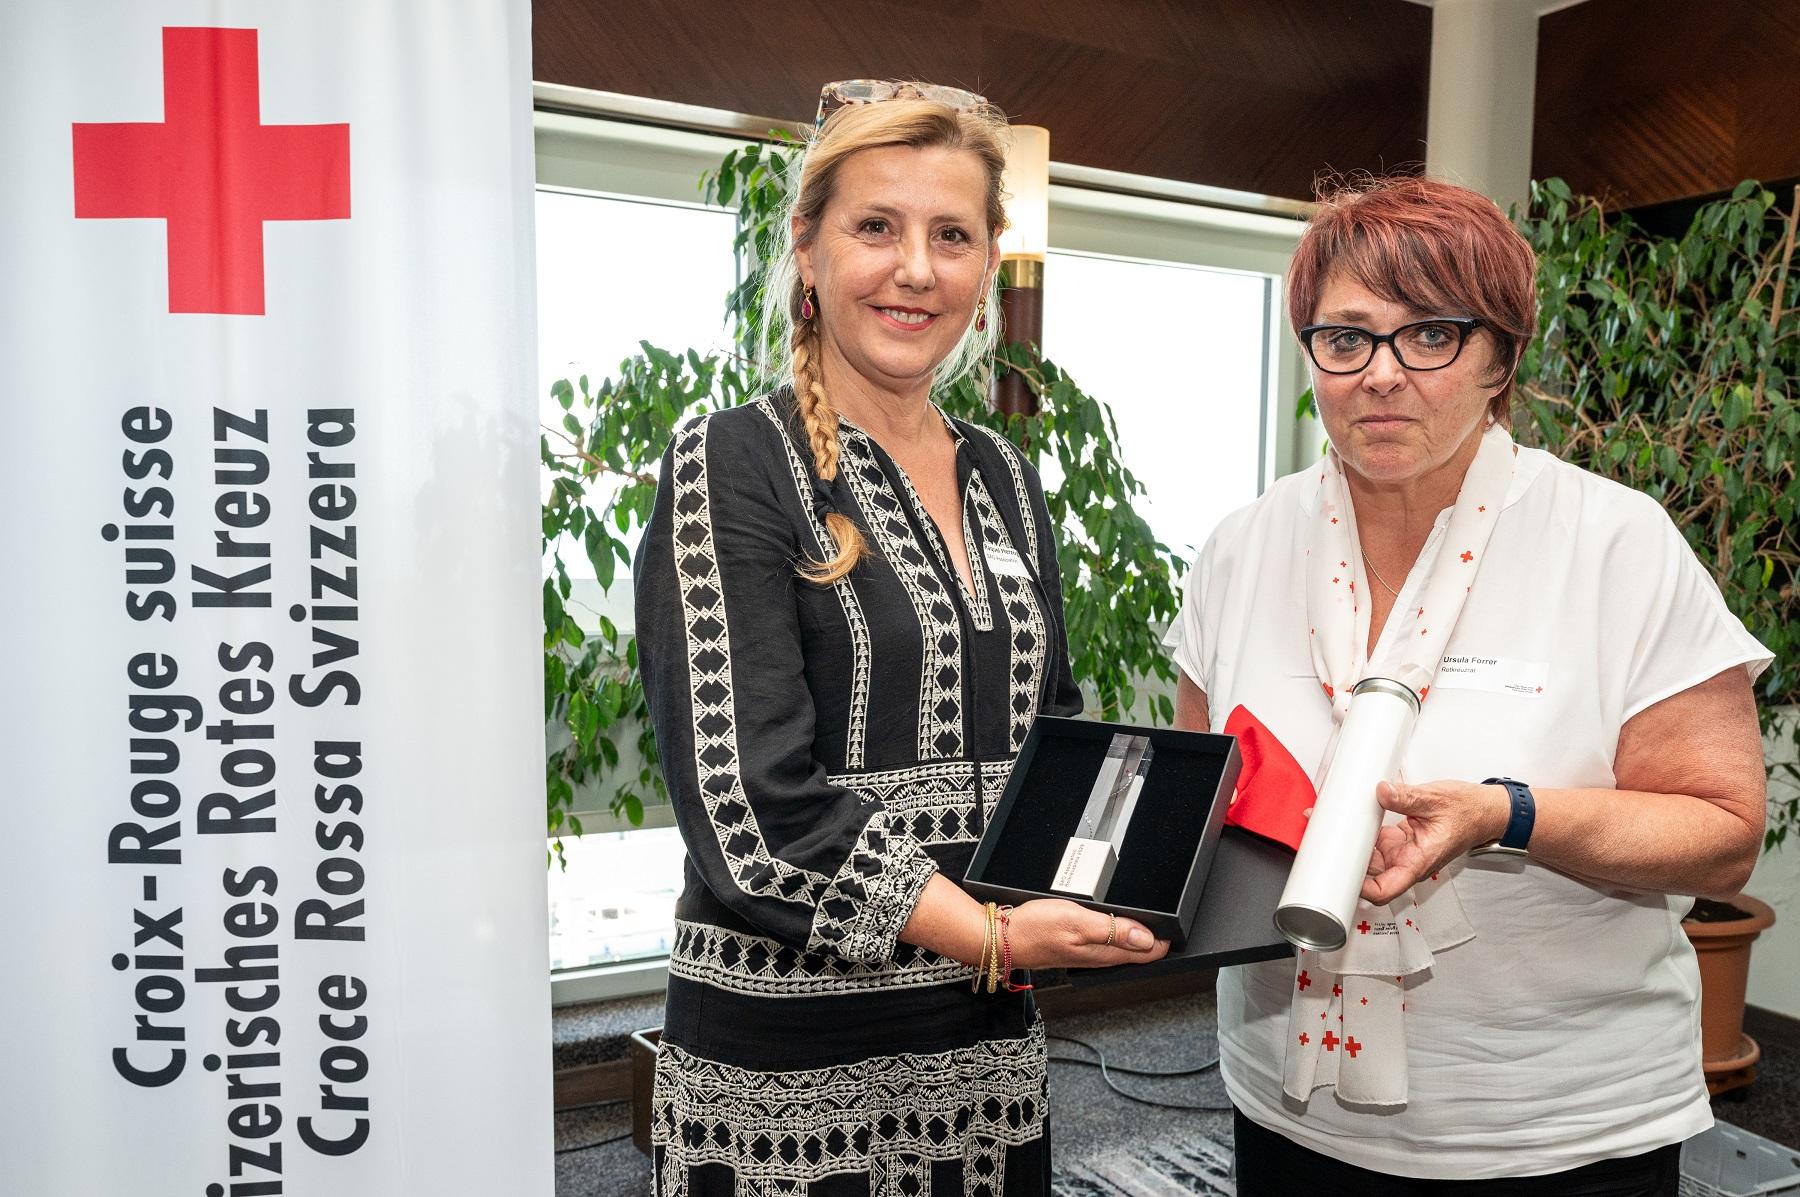 Raquel Herzog dell'Associazione SAO e Ursula Forrer del Consiglio della Croce Rossa, alla cerimonia di premiazione.